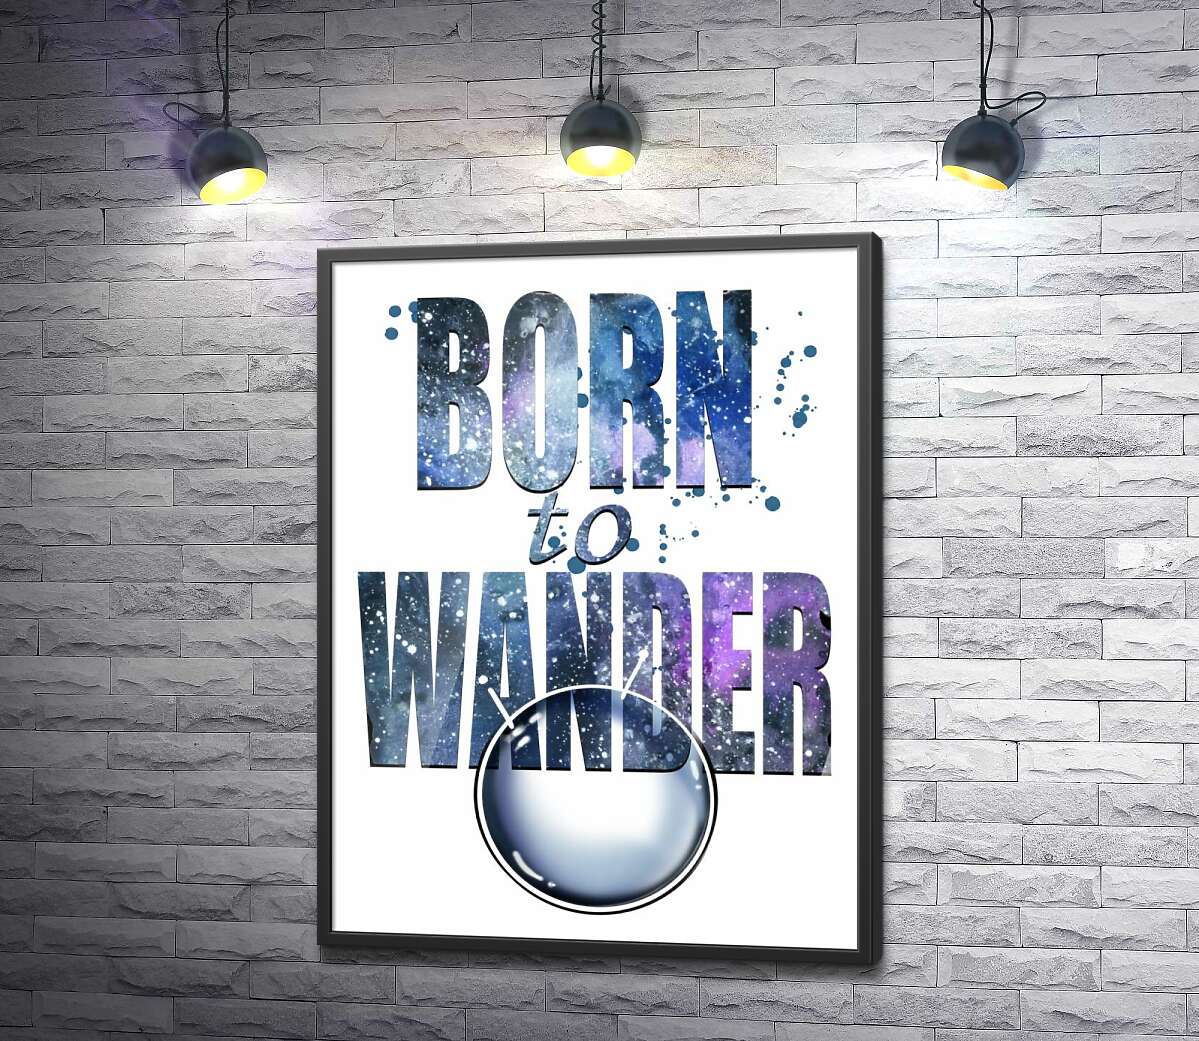 постер Космическая надпись "born to wander"